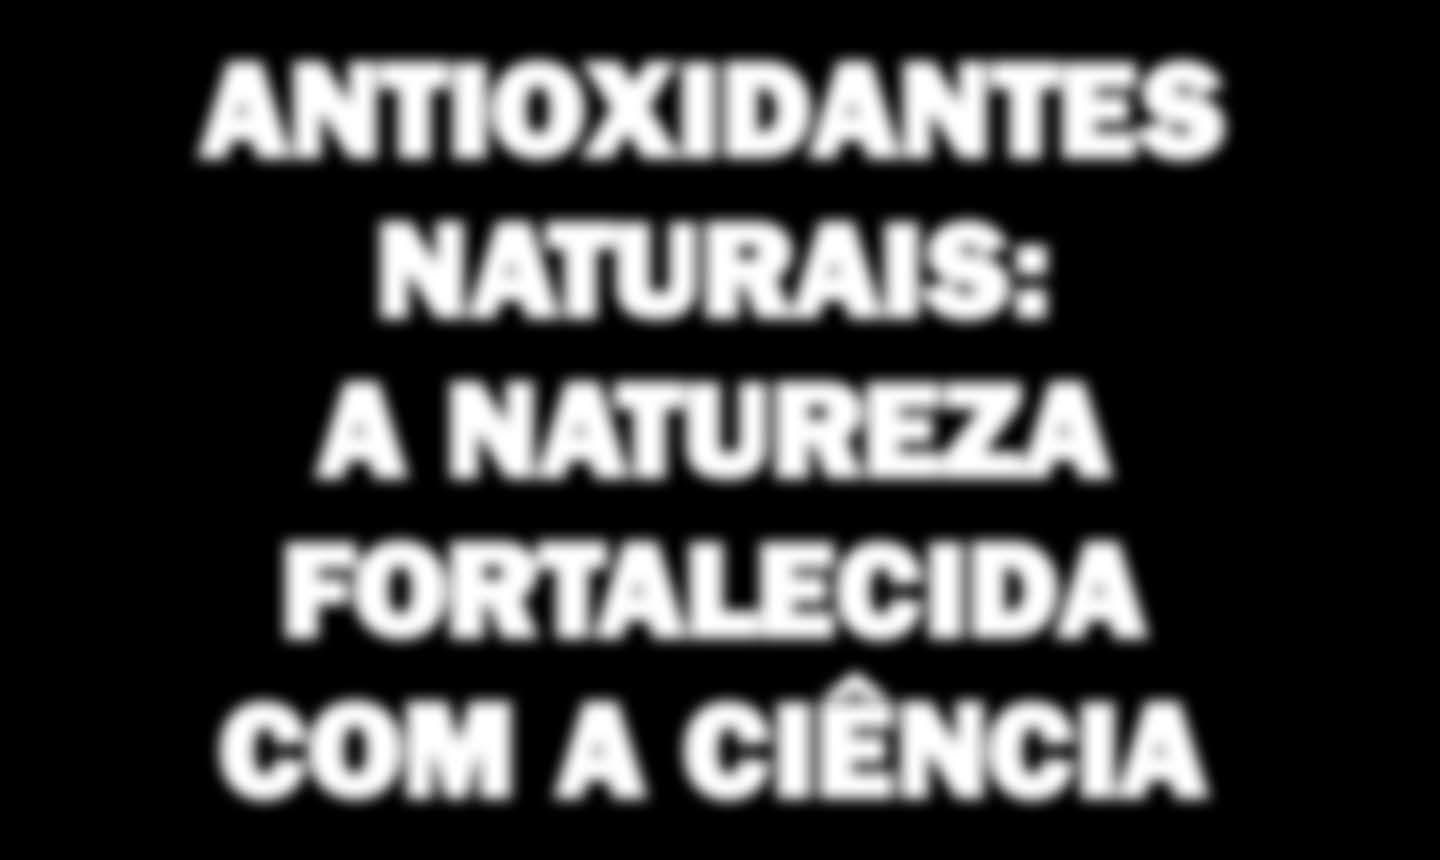 Dossiê antioxidantes ANTIOXIDANTES NATURAIS: A NATUREZA FORTALECIDA COM A CIÊNCIA Extrato de alecrim O alecrim é utilizado há mais de mil anos como condimento e é conhecido por suas propriedades